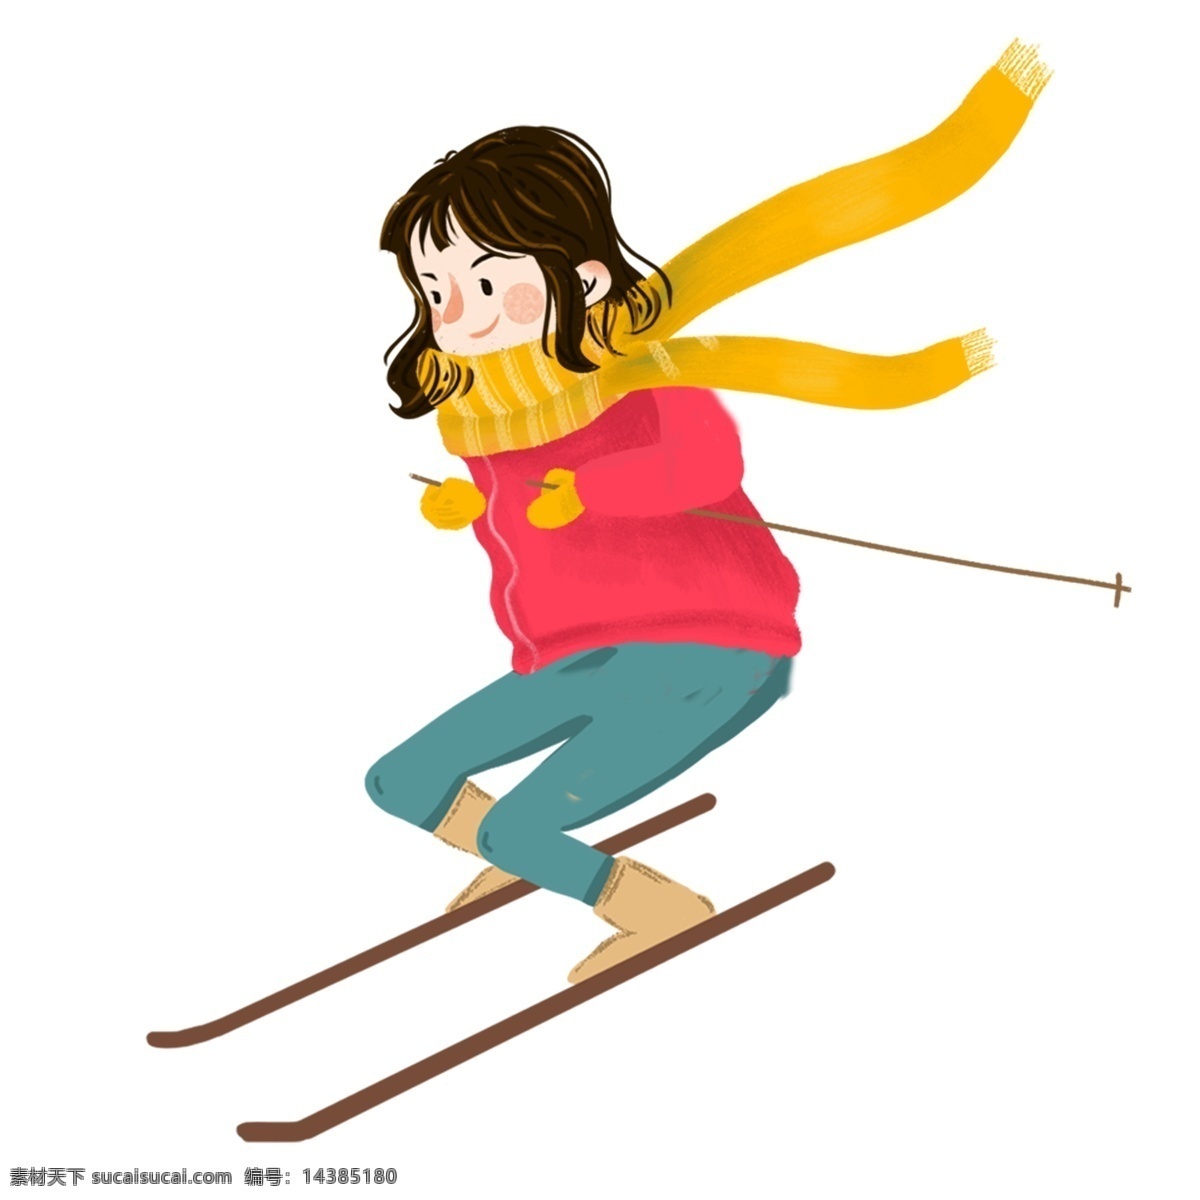 手绘 卡通 女孩 滑雪 原创 元素 运动 休闲 围巾 原创元素 设计元素